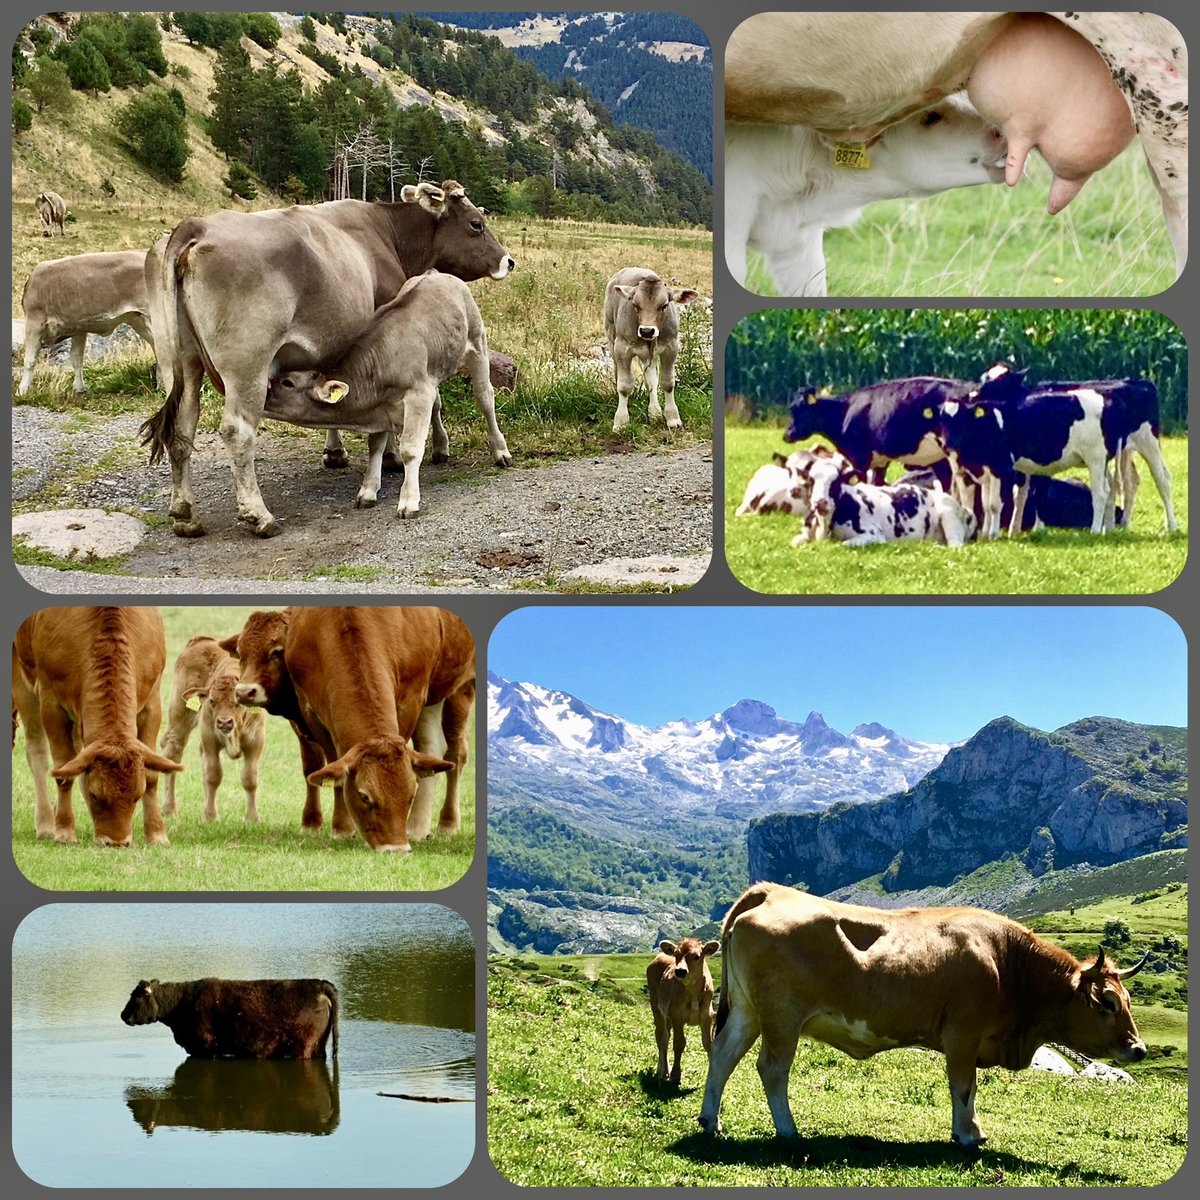 Dag 30 van #camer_a_pril 
Vandaag met het thema #koeien een initiatief van @jolandabrwr 🐄🐄🐄
Wat was het een mooie maand vol prachtige foto’s van diverse onderwerpen!📸 Ik heb er heel erg van genoten Jolanda! Reuze bedankt voor de organisatie er van!😃